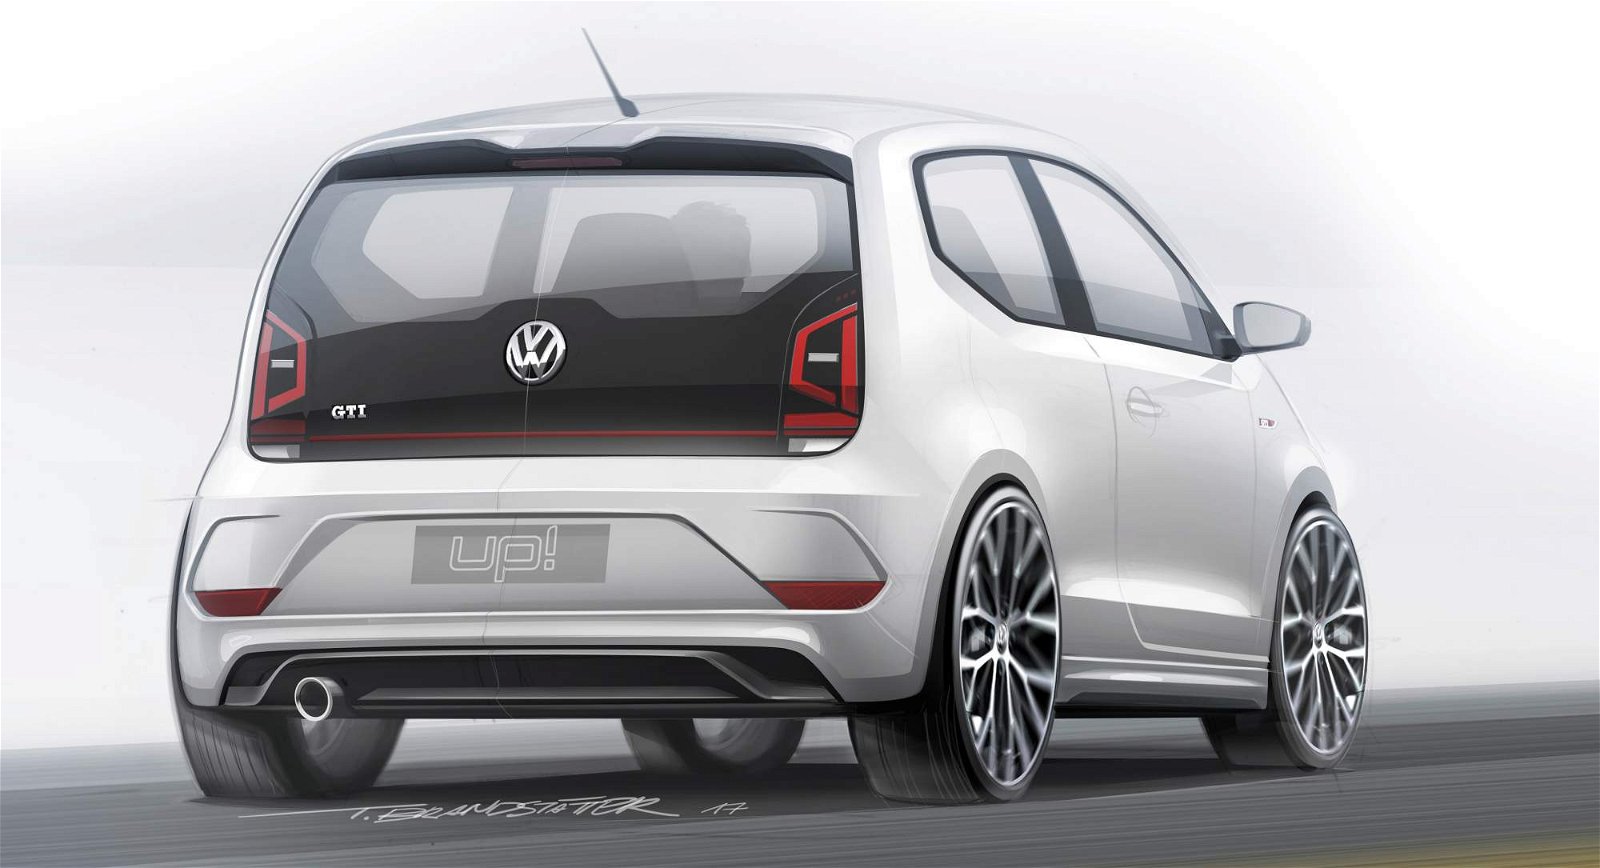 2018-VW-up!-GTI-design-sketch-2